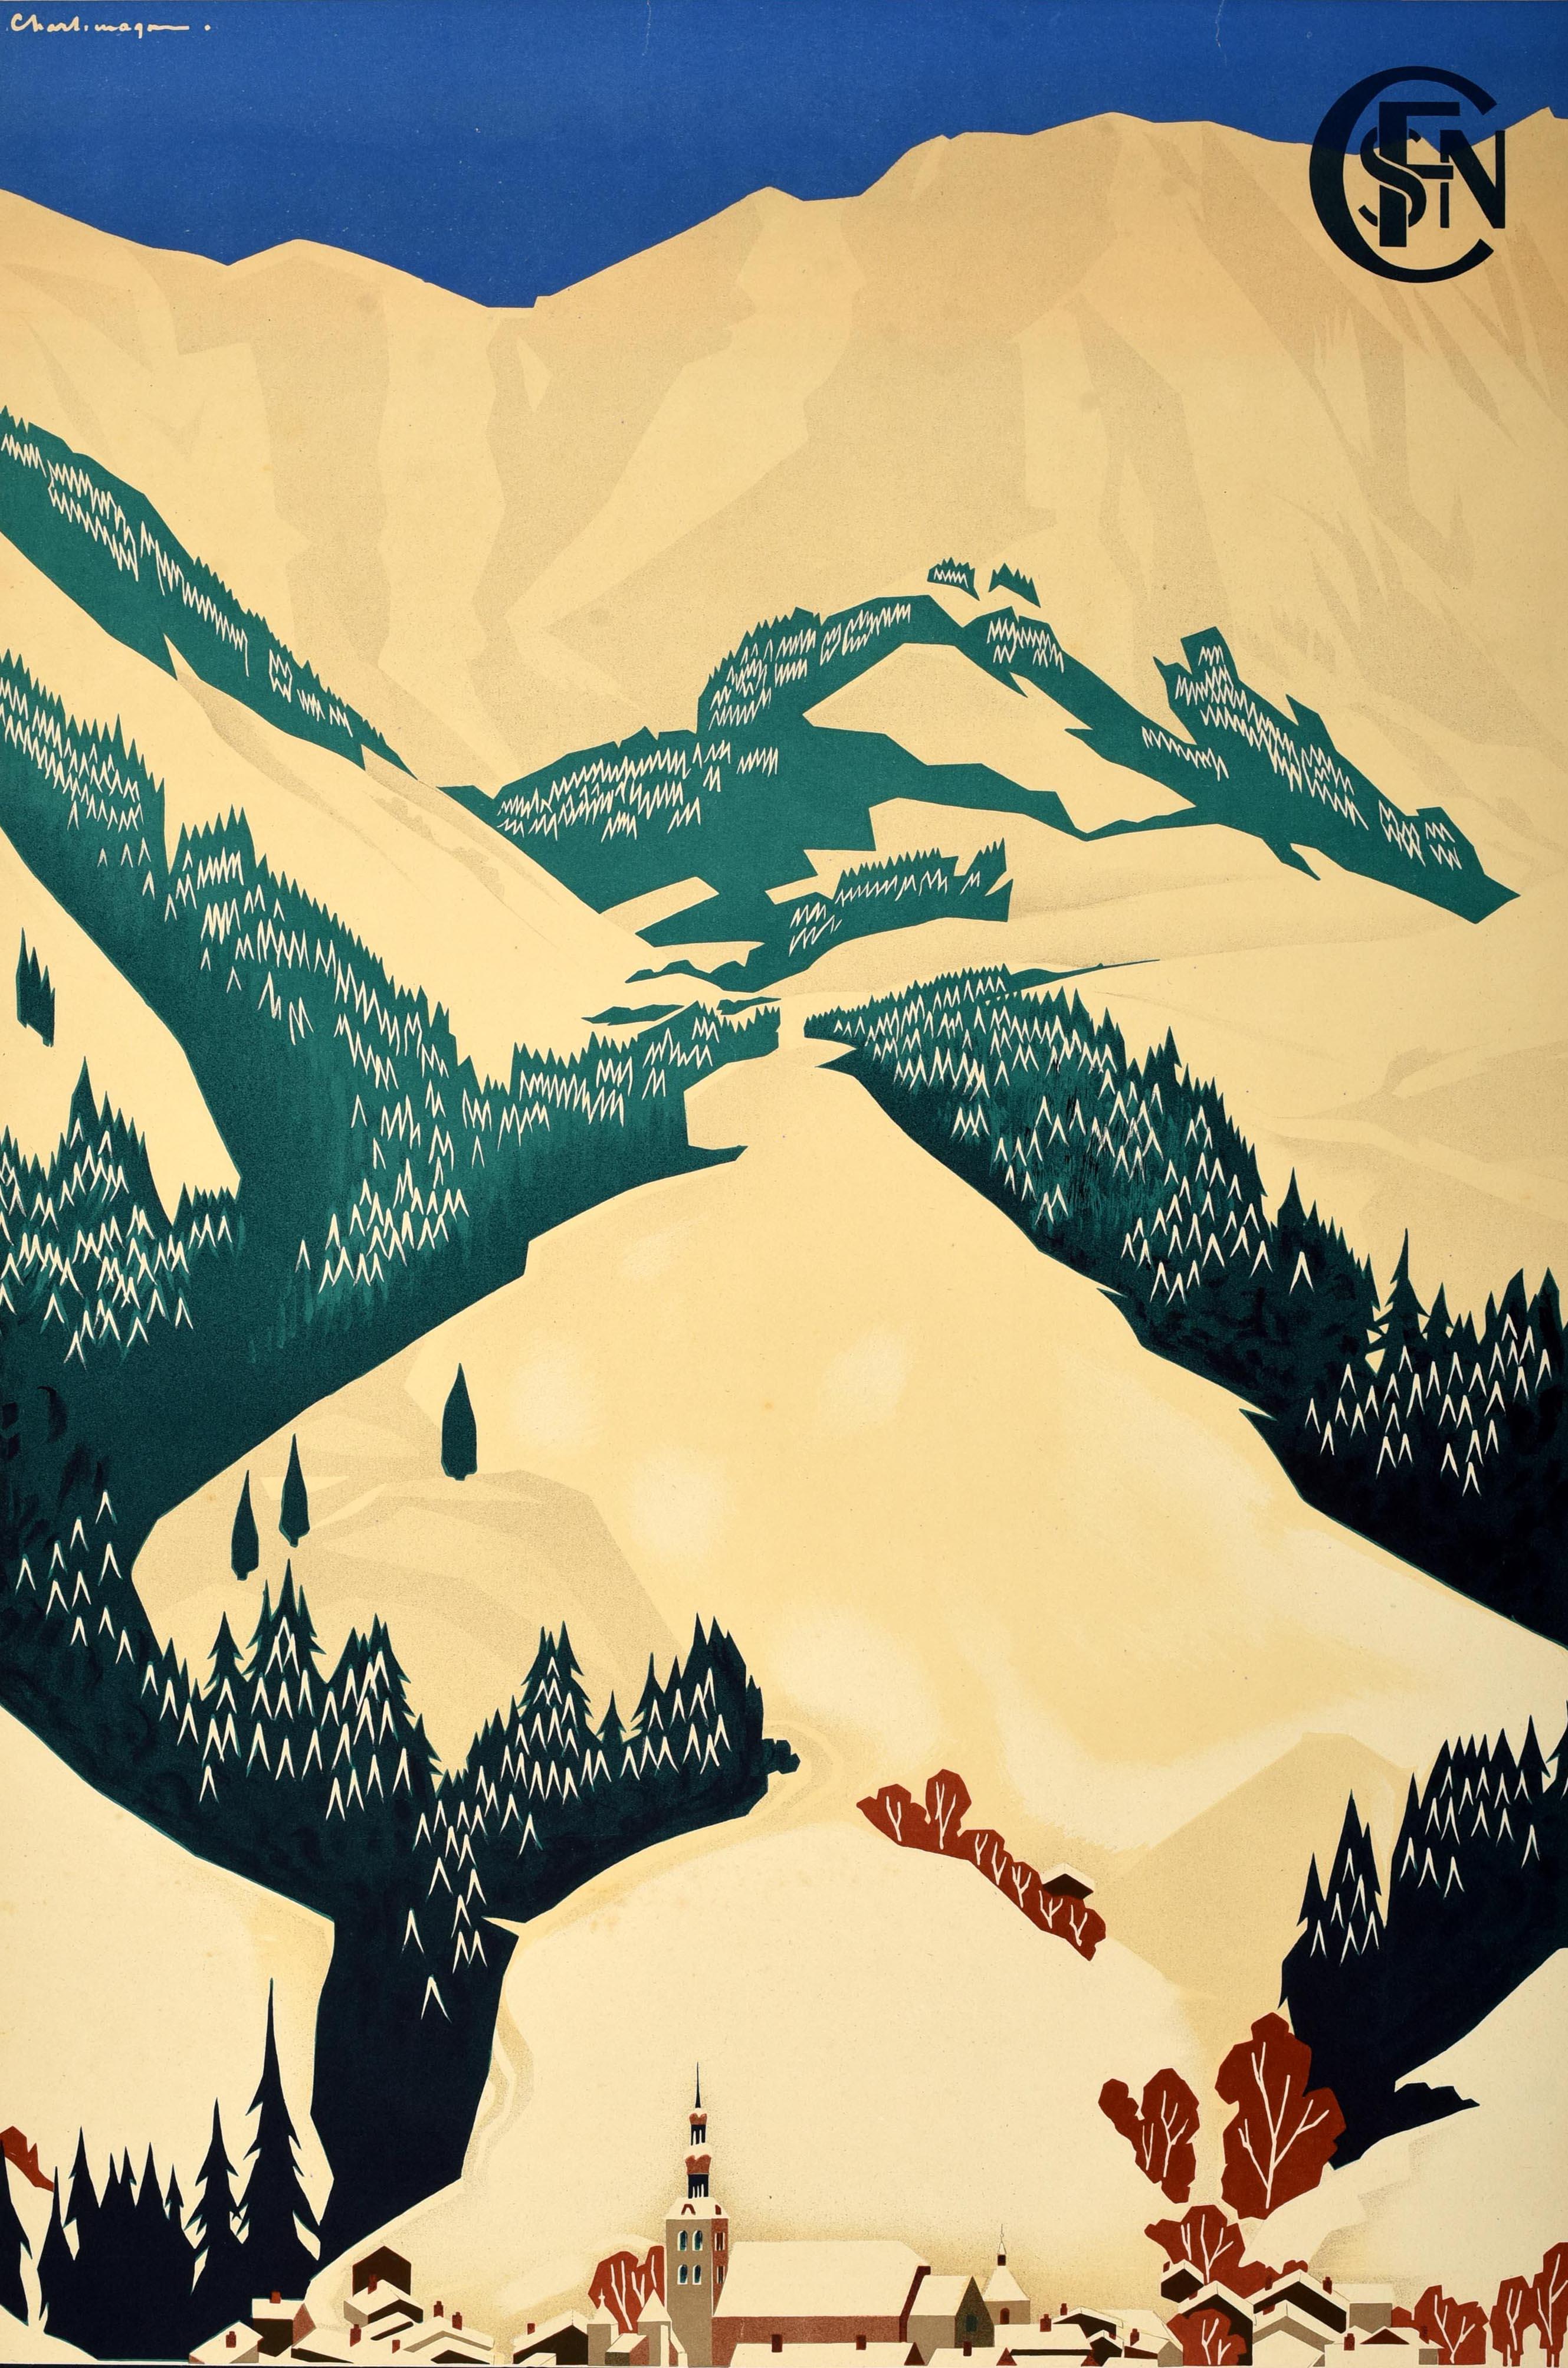 Affiche de voyage originale pour Megève, émise par la Société Nationale des Chemins de Fer Français (SNCF), fondée en 1938. Elle représente des pistes de ski bordées d'arbres, des montagnes enneigées, un ciel bleu, une église et des toits enneigés